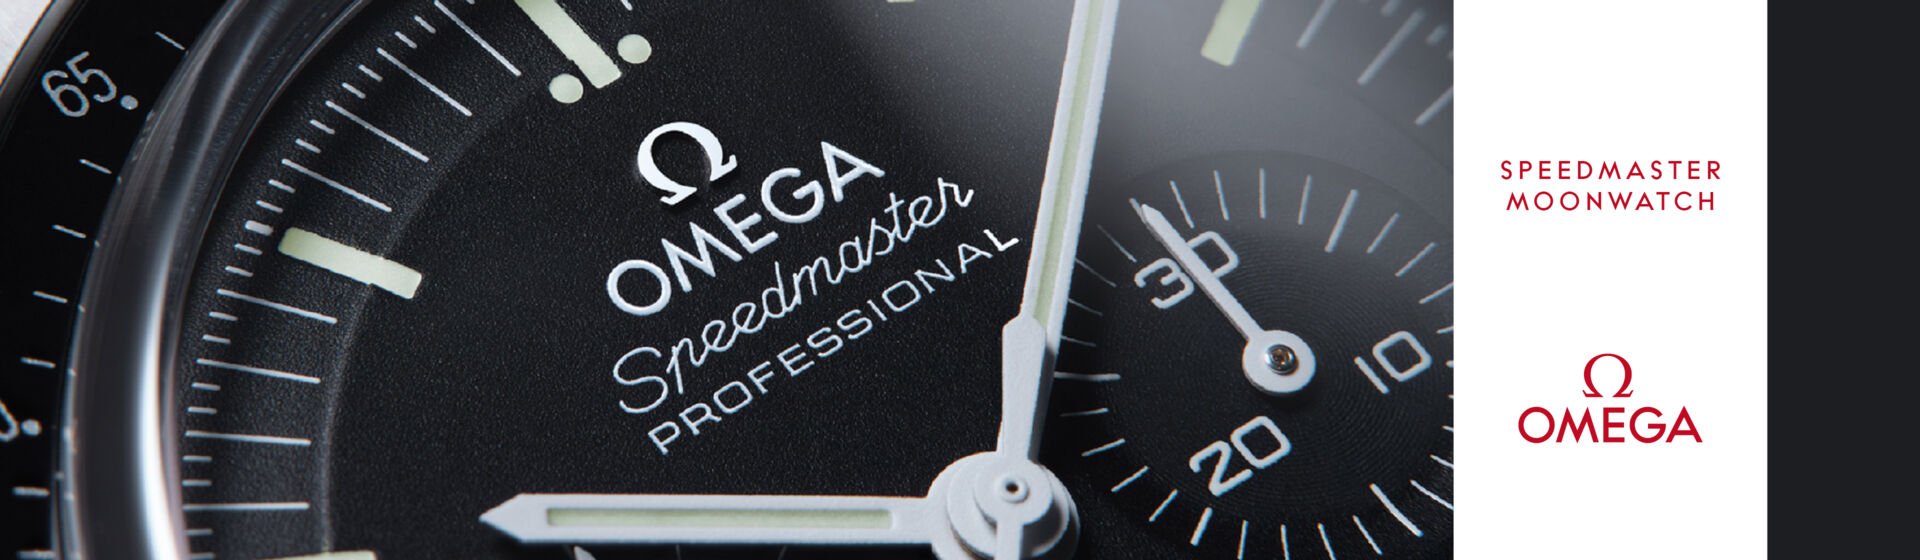 Banner Unterseite Omega Speedmaster